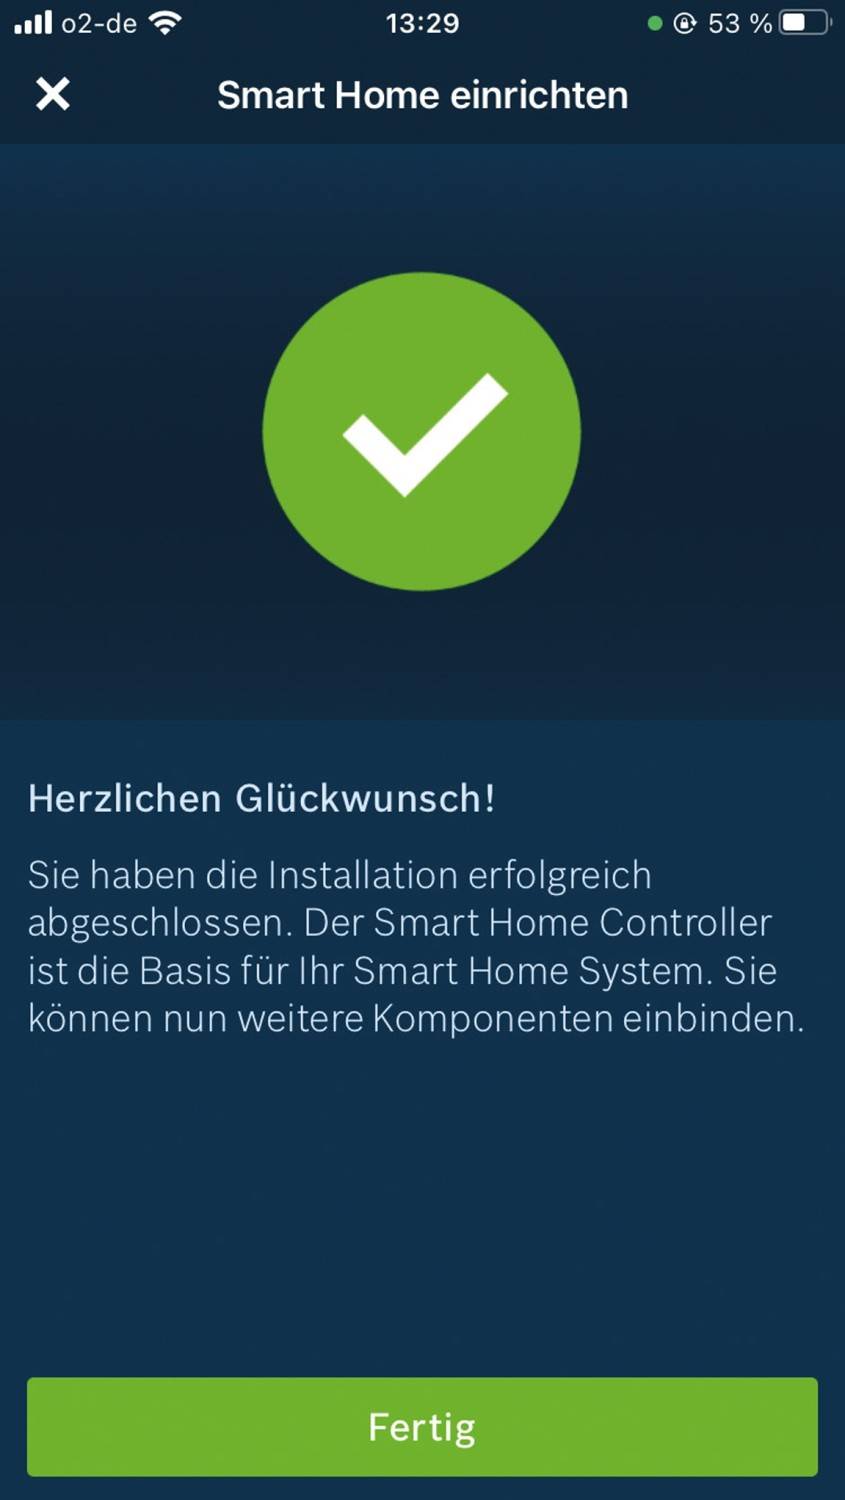 Smart Home System Bosch Smart Home im Test, Bild 15